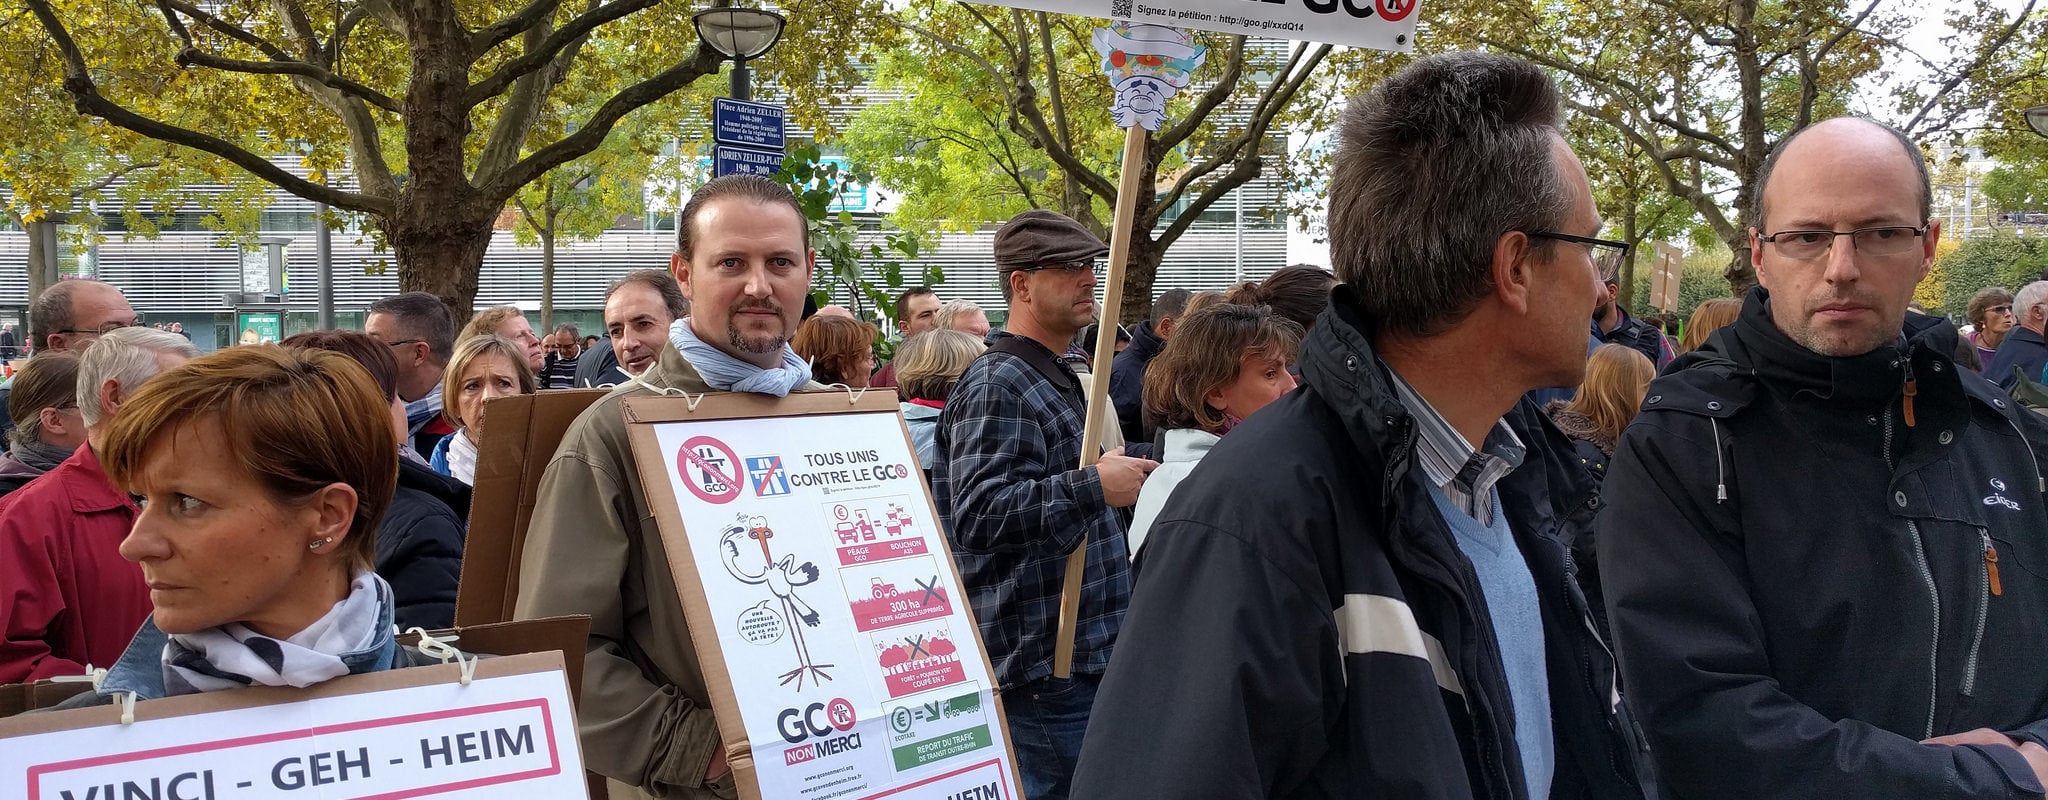 Le maire d’Oberschaeffolsheim porte plainte contre trois militants anti-GCO postés devant sa mairie